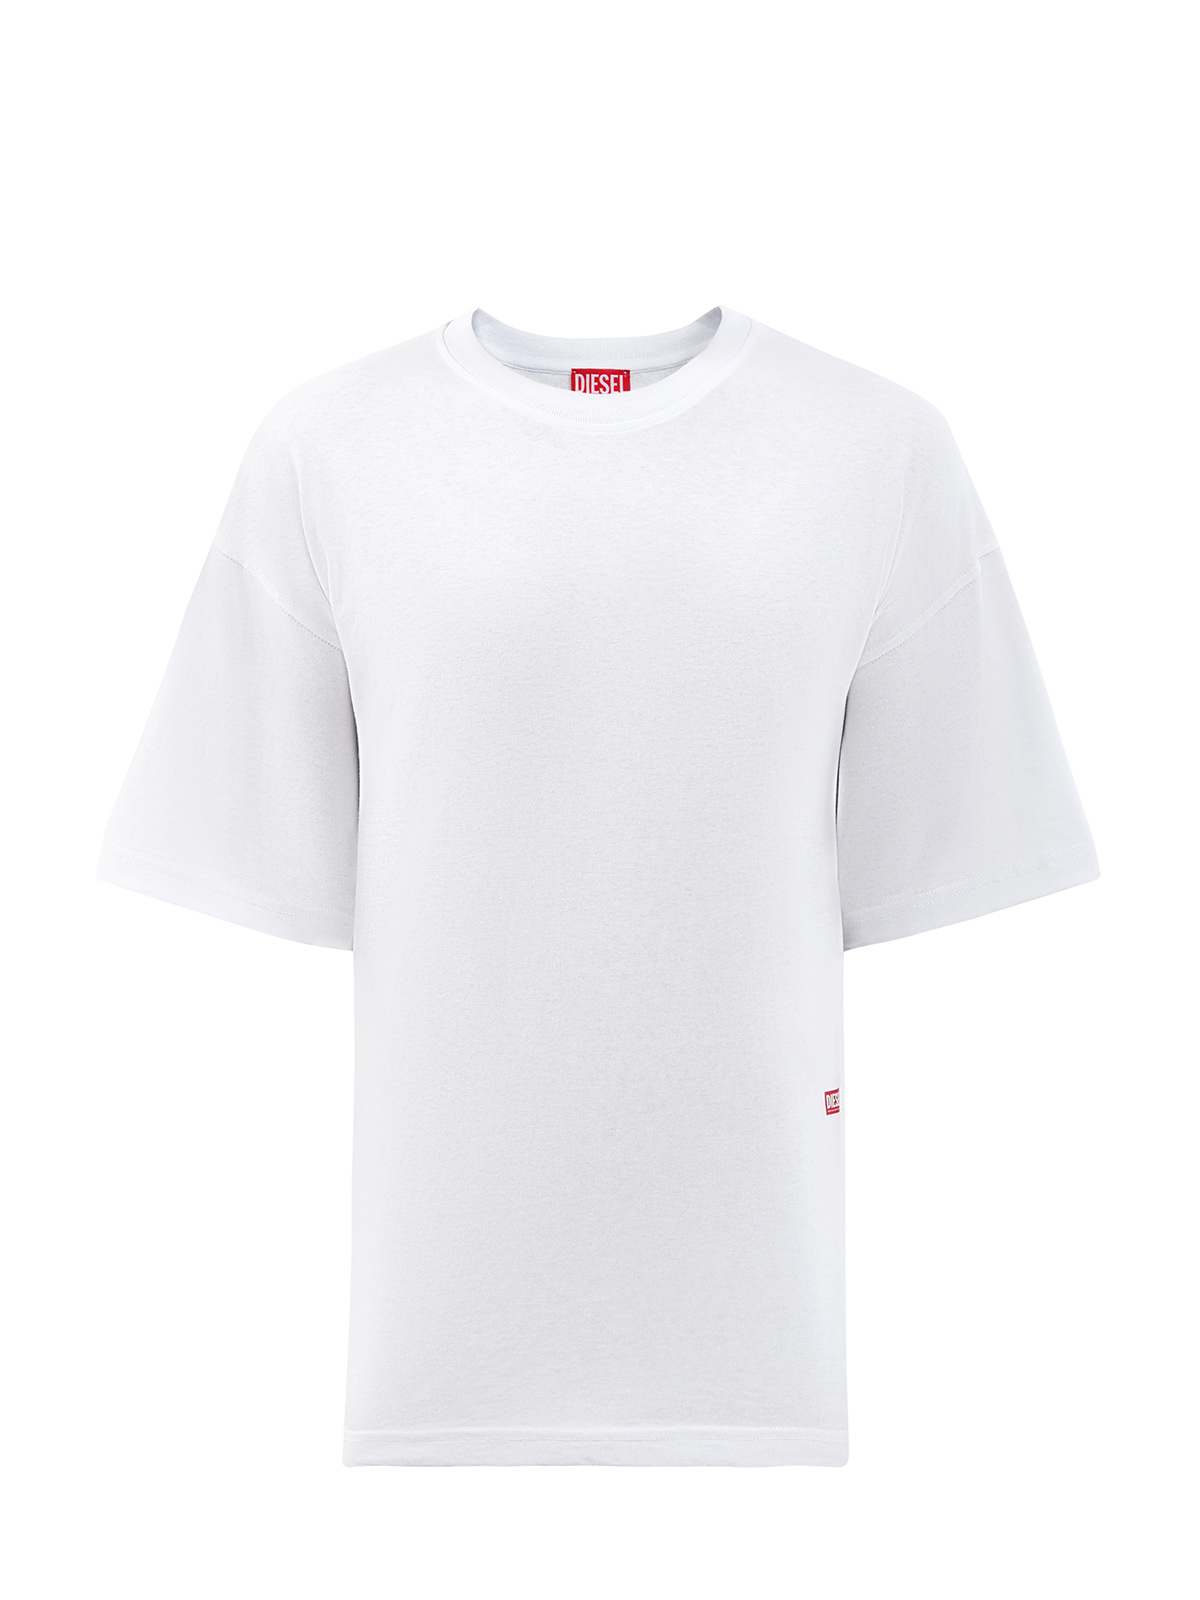 Свободная футболка T-Boxt из хлопка с принтом и логотипом DIESEL, цвет белый, размер S;M - фото 1